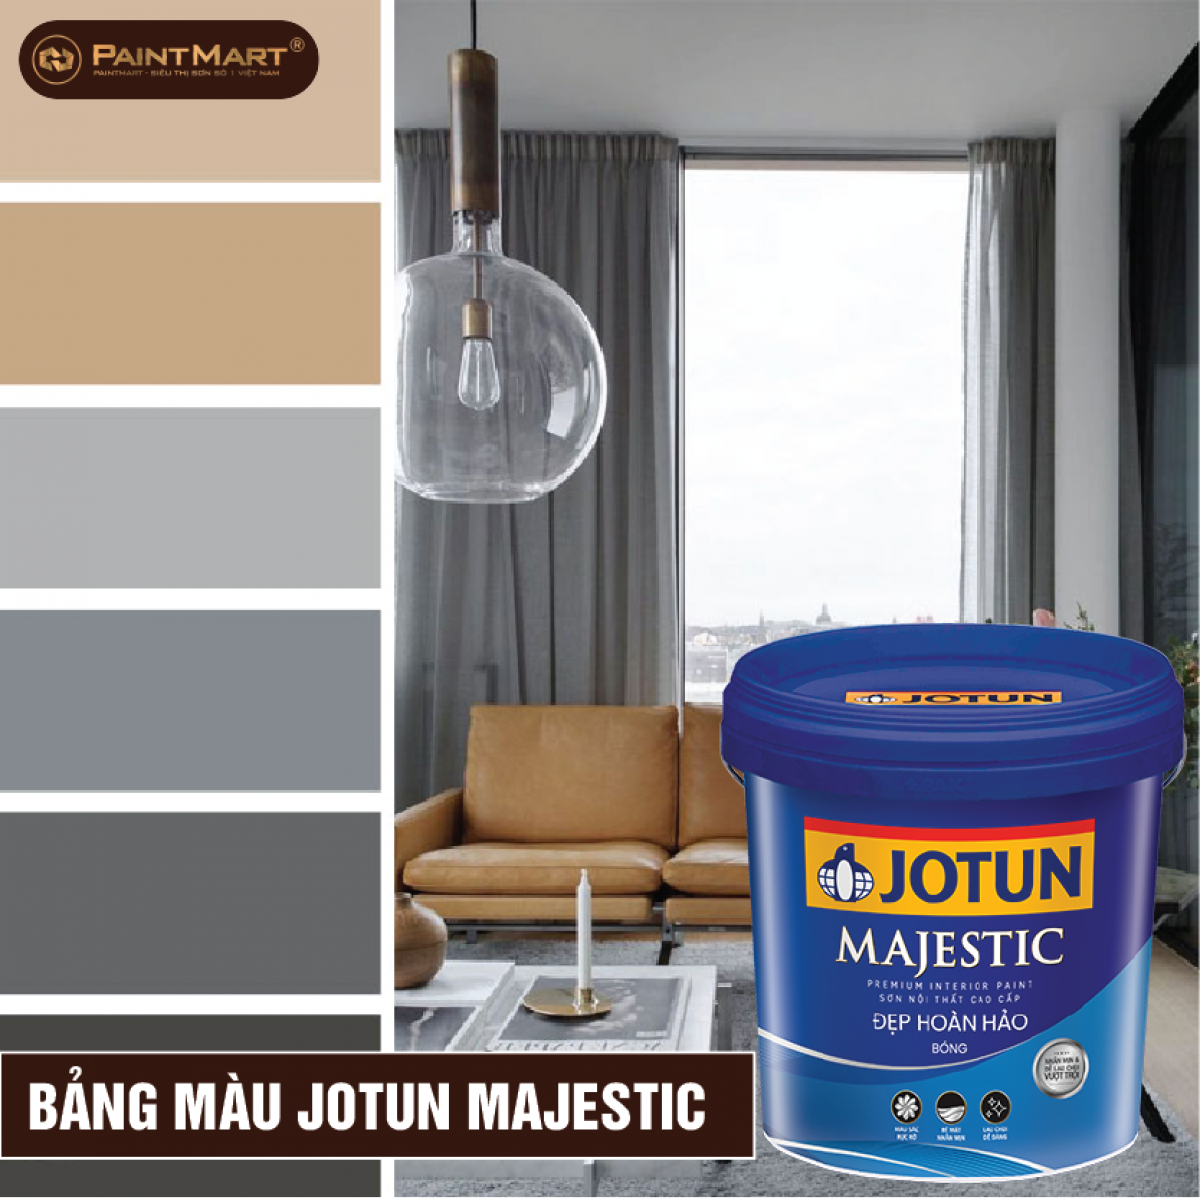 Để lựa chọn màu sơn nội thất Majestic phù hợp với không gian nhà của bạn, hãy tham khảo bảng màu sơn nội thất Majestic. Bảng màu có sự đa dạng và phong phú giúp bạn lựa chọn được màu sơn ưng ý nhất. Còn chần chờ gì nữa? Hãy xem ngay hình ảnh liên quan để có thêm ý tưởng cho không gian nhà của bạn!